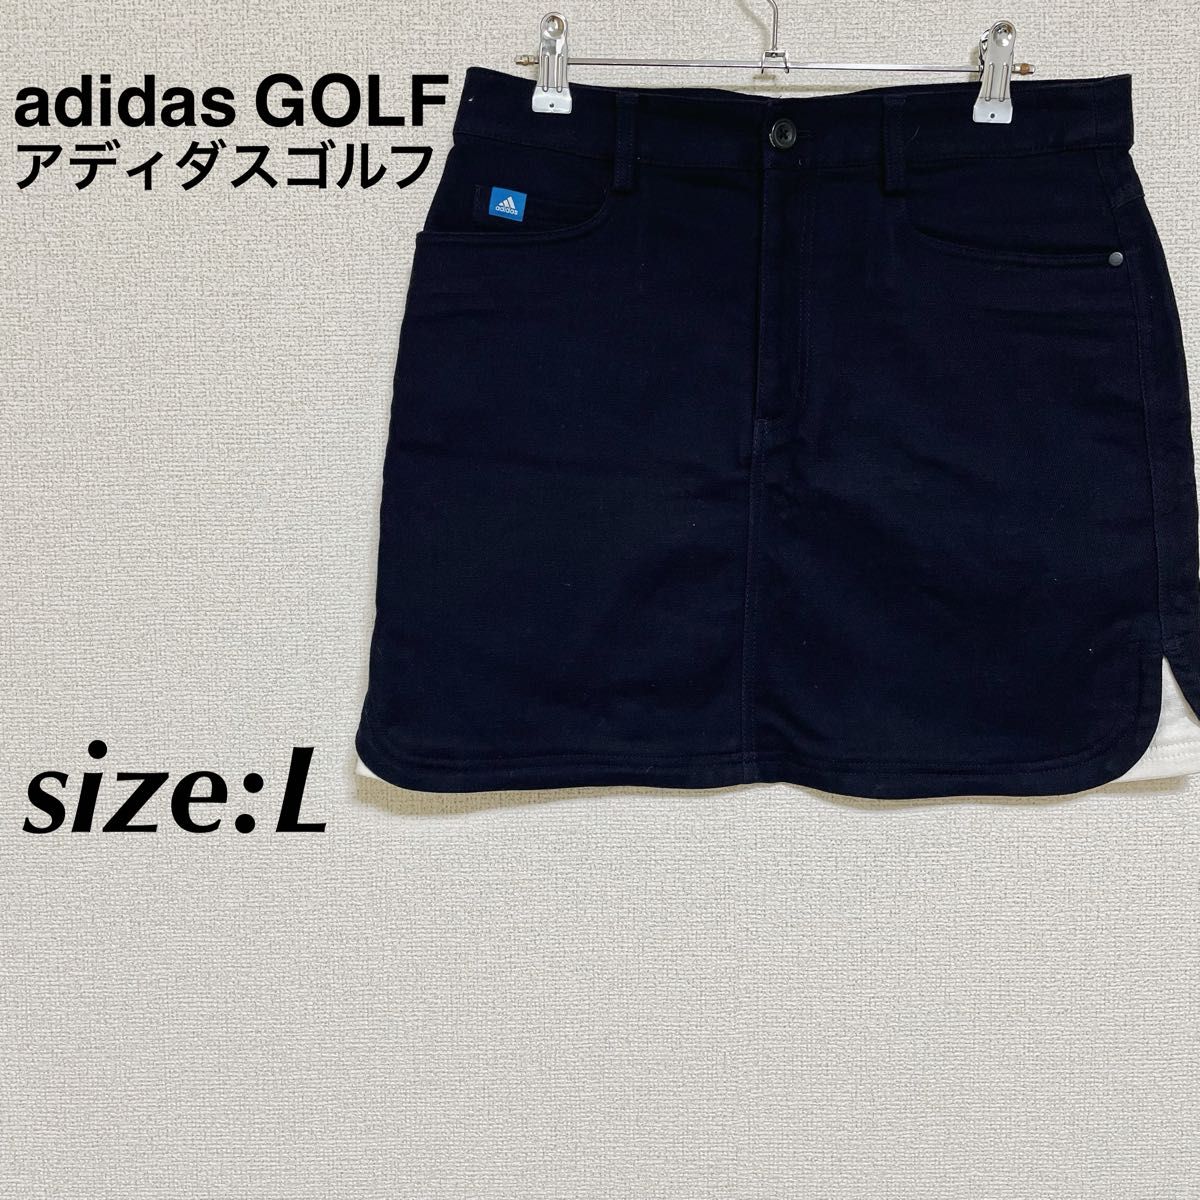 adidas GOLF アディダスゴルフ ゴルフウェア ゴルフスカート ネイビー